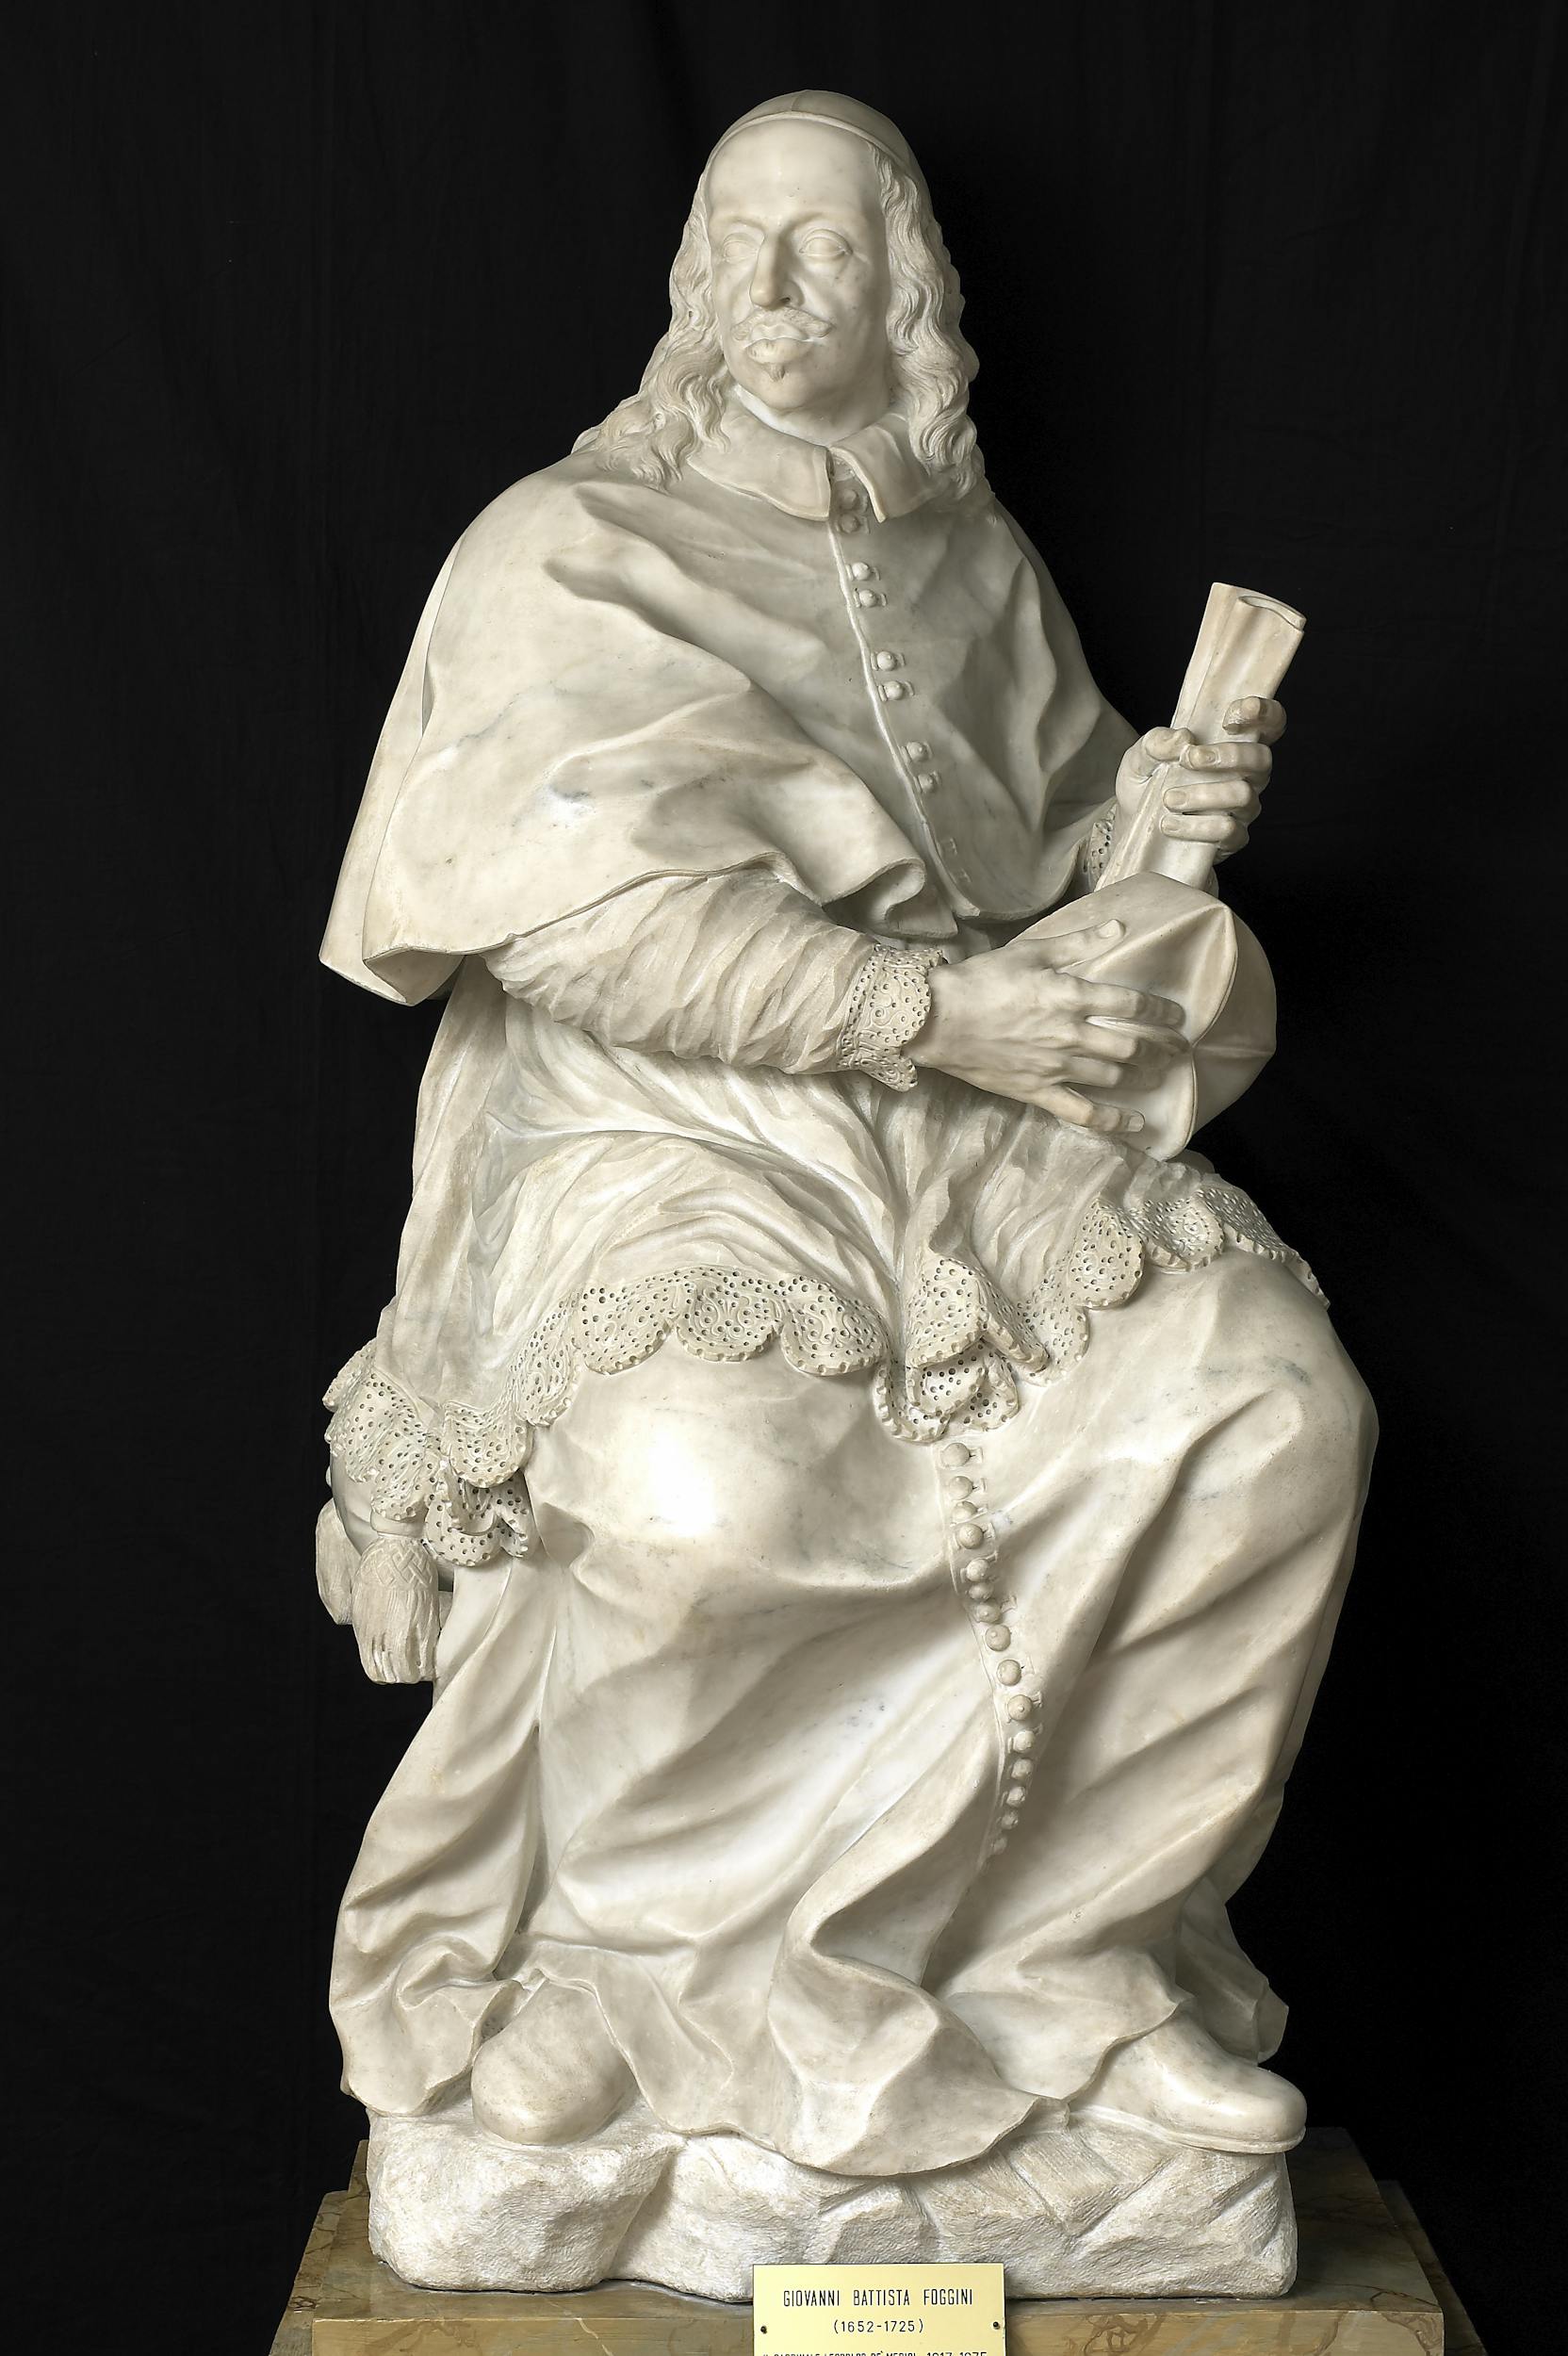 Giovan Battista Foggini, Ritratto del cardinale Leopoldo de’ Medici, Gallerie degli Uffizi.